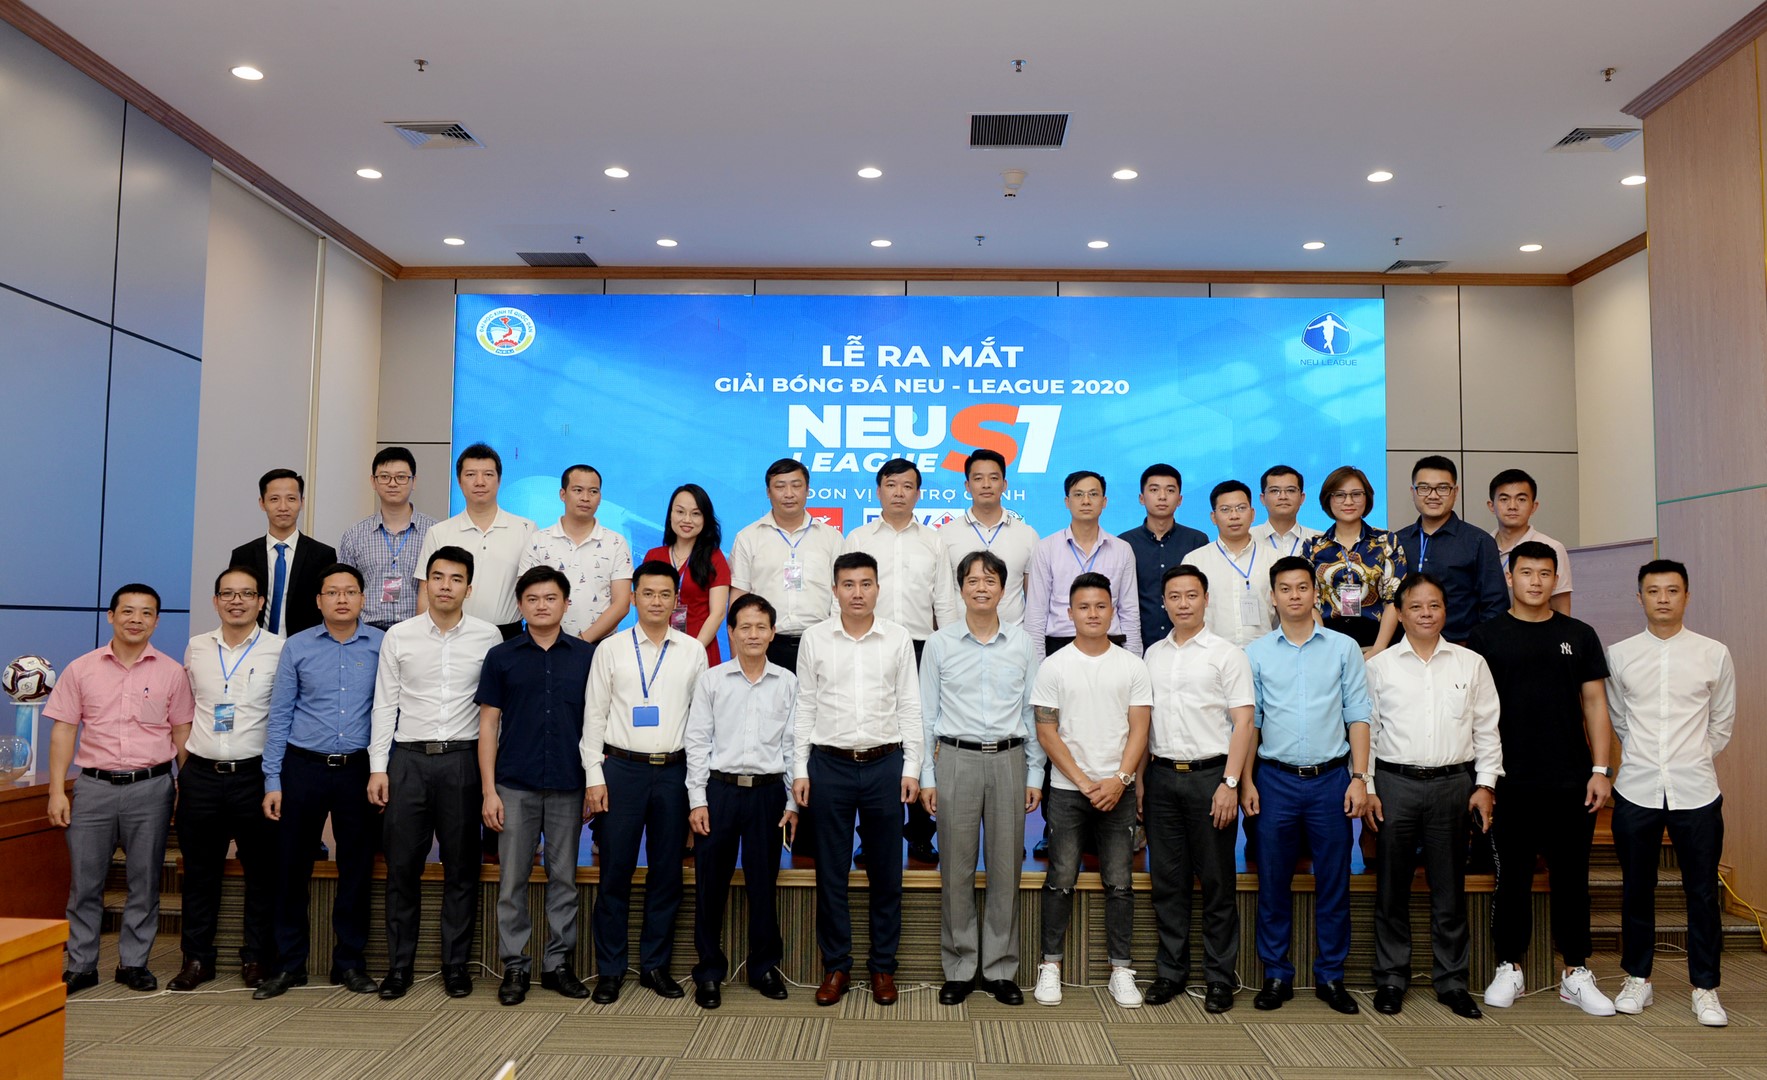 Quang Hải tới dự Lễ ra mắt Giải bóng đá NEU League 2020 do Trường Đại học Kinh tế Quốc dân tổ chức - Ảnh 9.